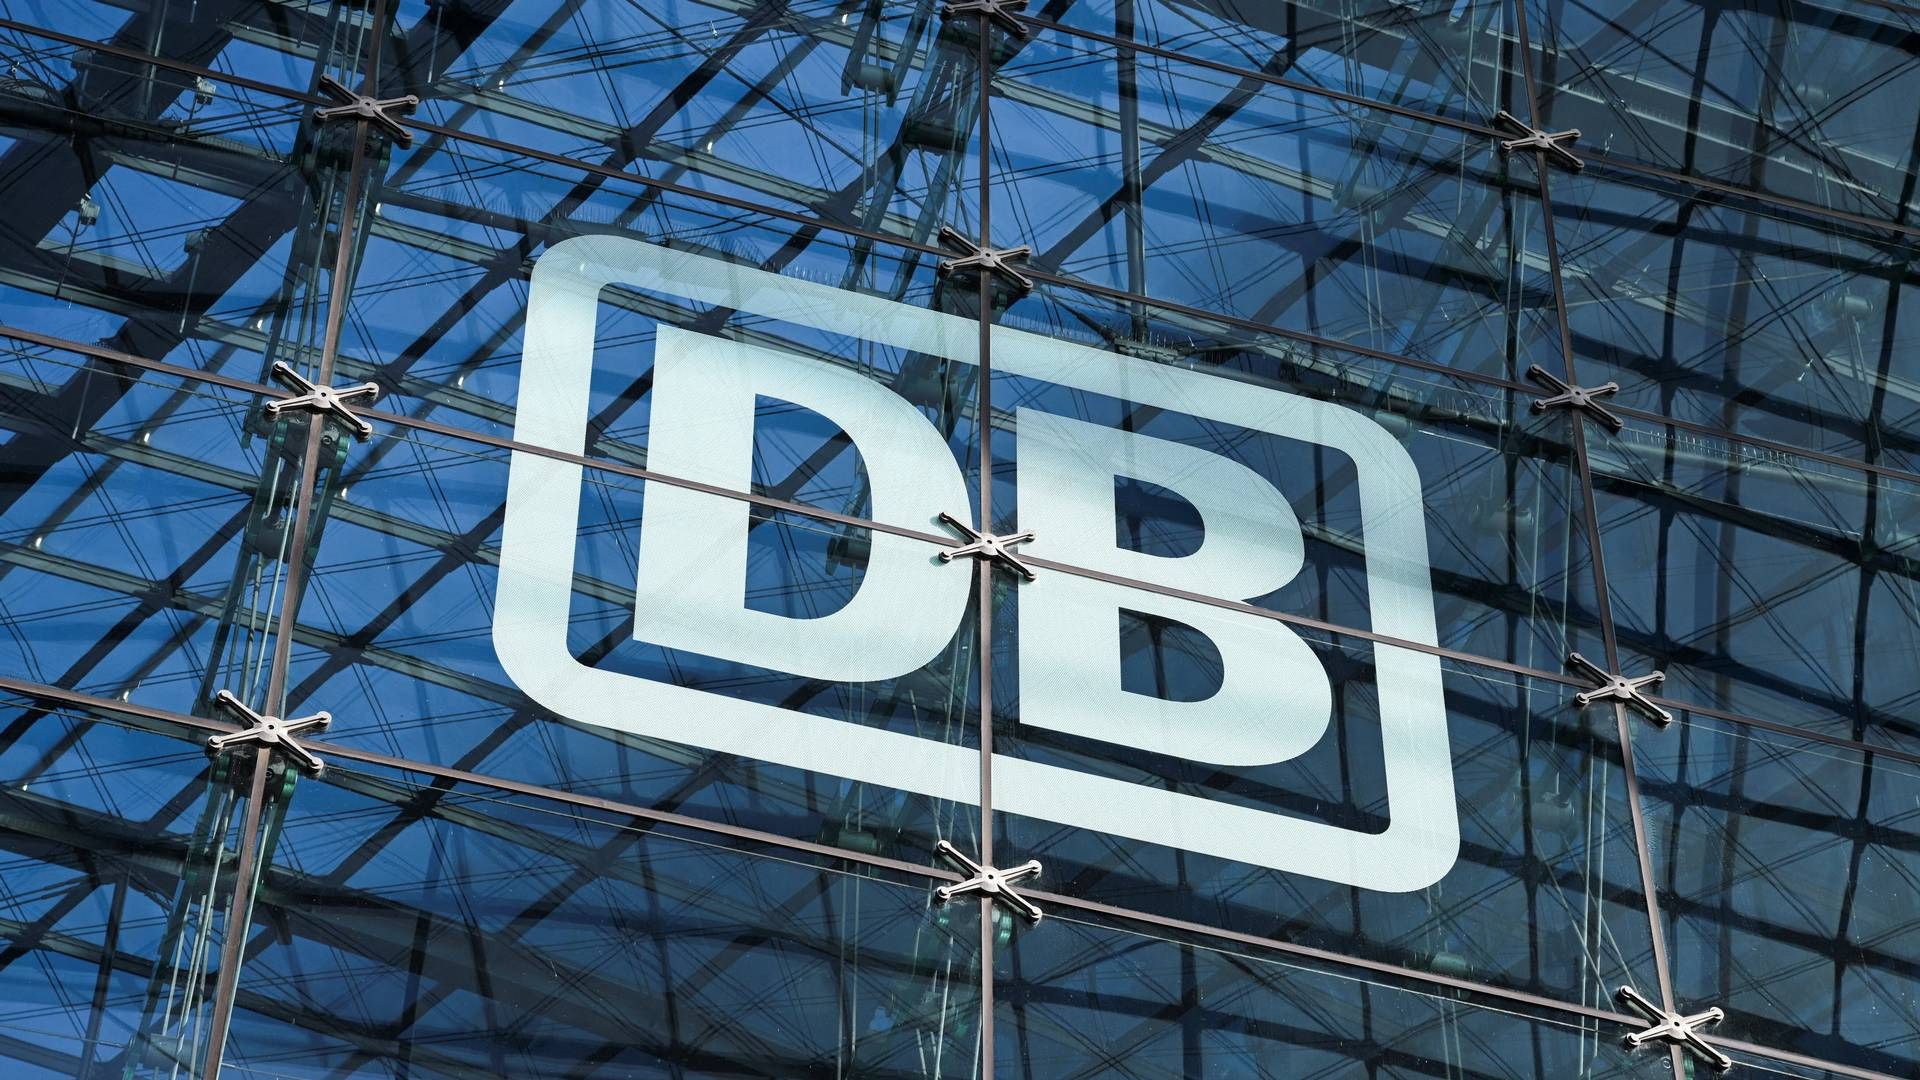 Lokomotivførerne har strejket i utilfredshed med, at deres arbejdsgiver, Deutsche Bahn, ikke havde præsenteret dem for et nyt forhandlingsudspil i de aktuelle overenskomstforhandlinger. | Foto: Annegret Hilse/Reuters/Ritzau Scanpix